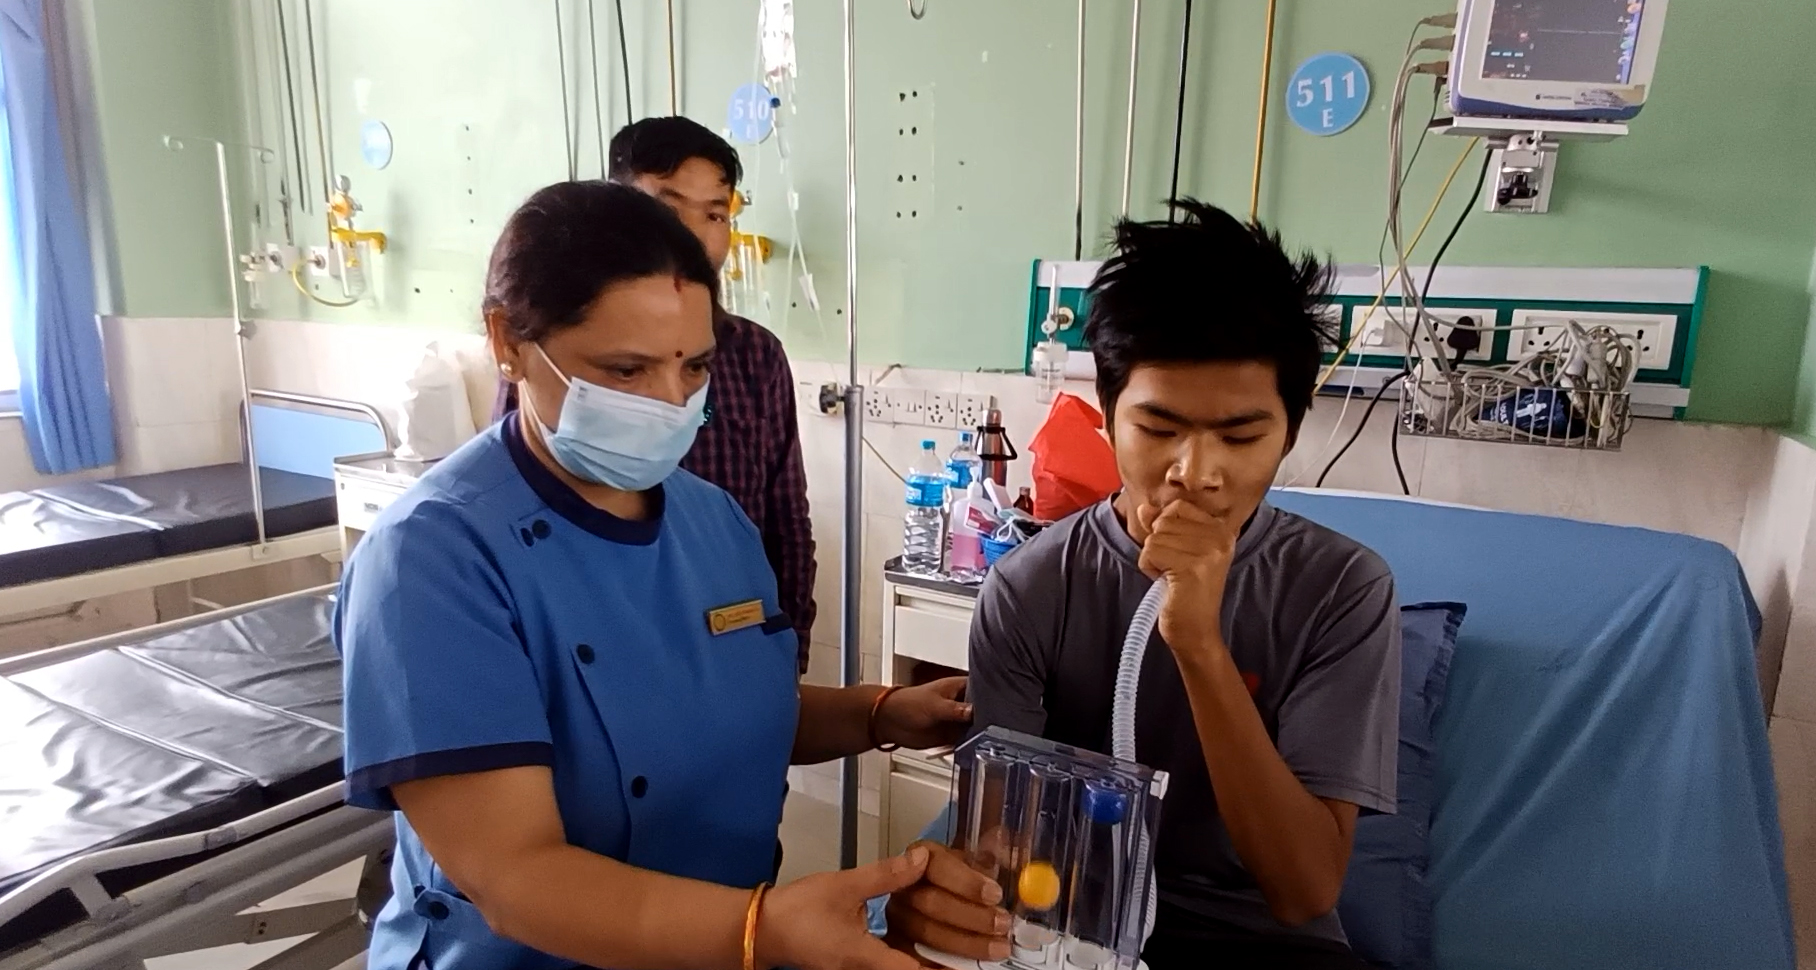 रुखबाट लडेर गम्भिर बालकको नेपाल मेडिकल कलेजमा सफल उपचार